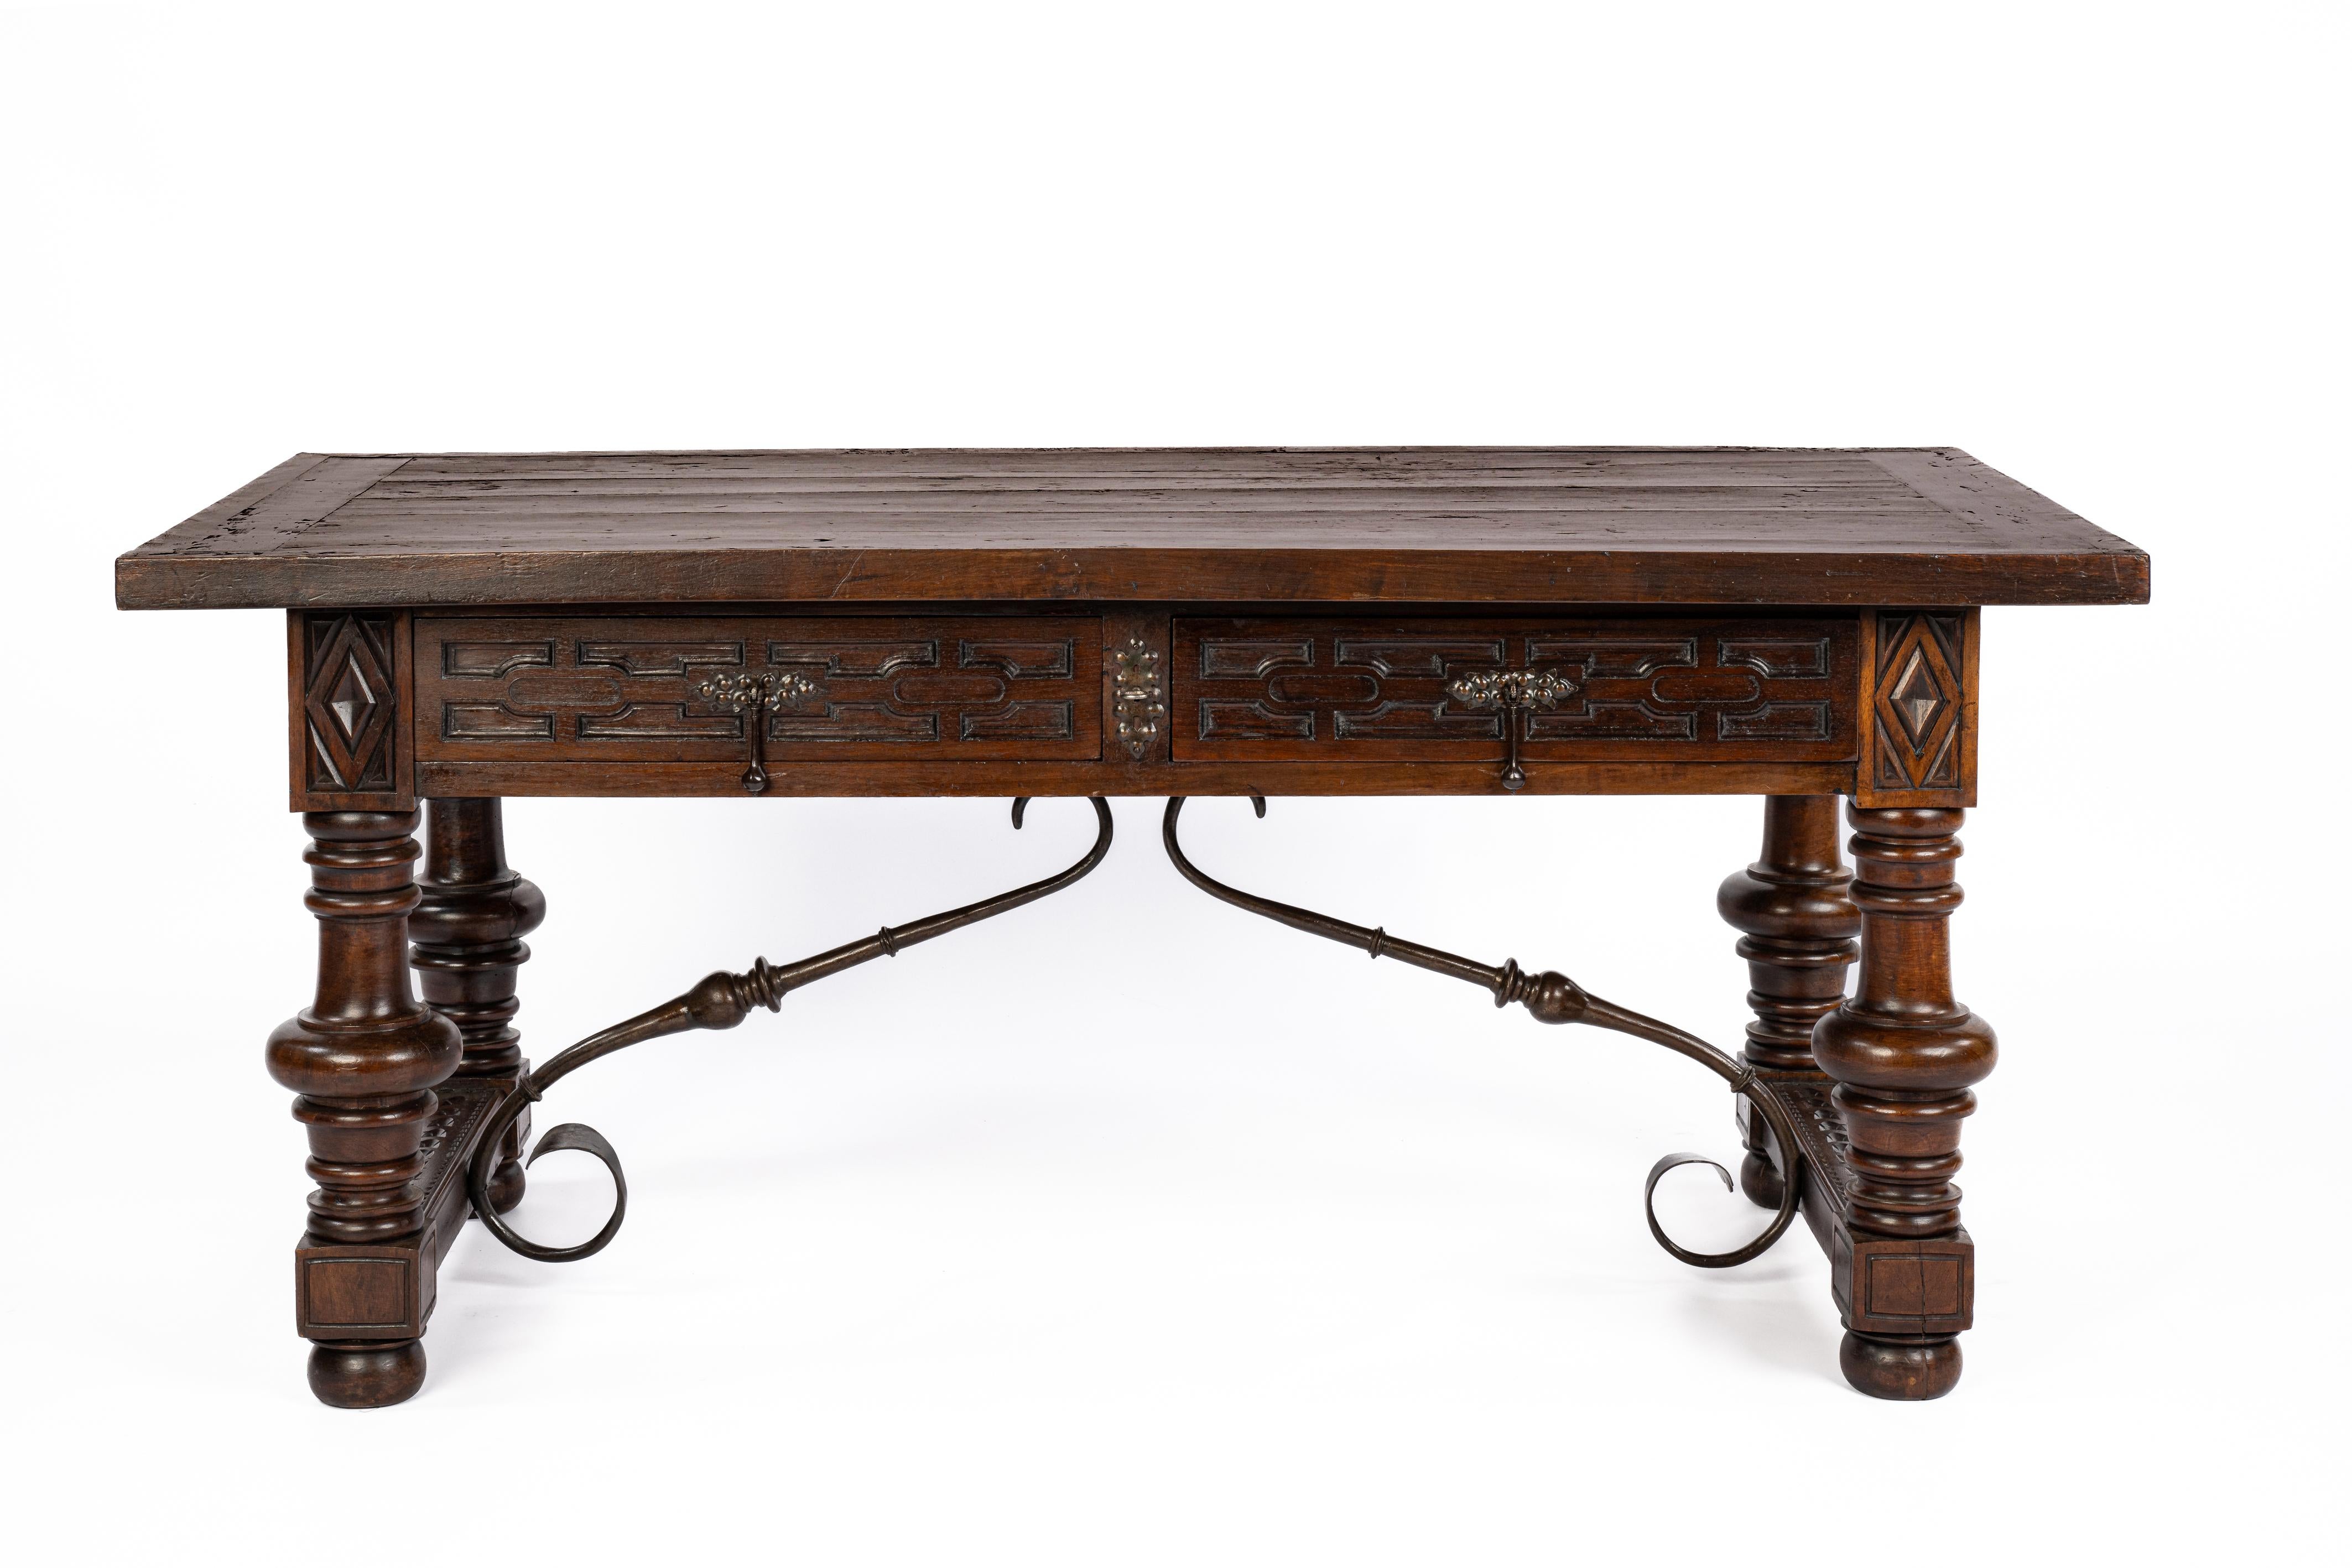 Ce magnifique bureau ou table à écrire baroque espagnol de la fin du XIXe siècle est fabriqué en bois de châtaignier massif avec des pieds tournés audacieux reliés par des brancards en fer forgé. La table comporte deux tiroirs avec une façade